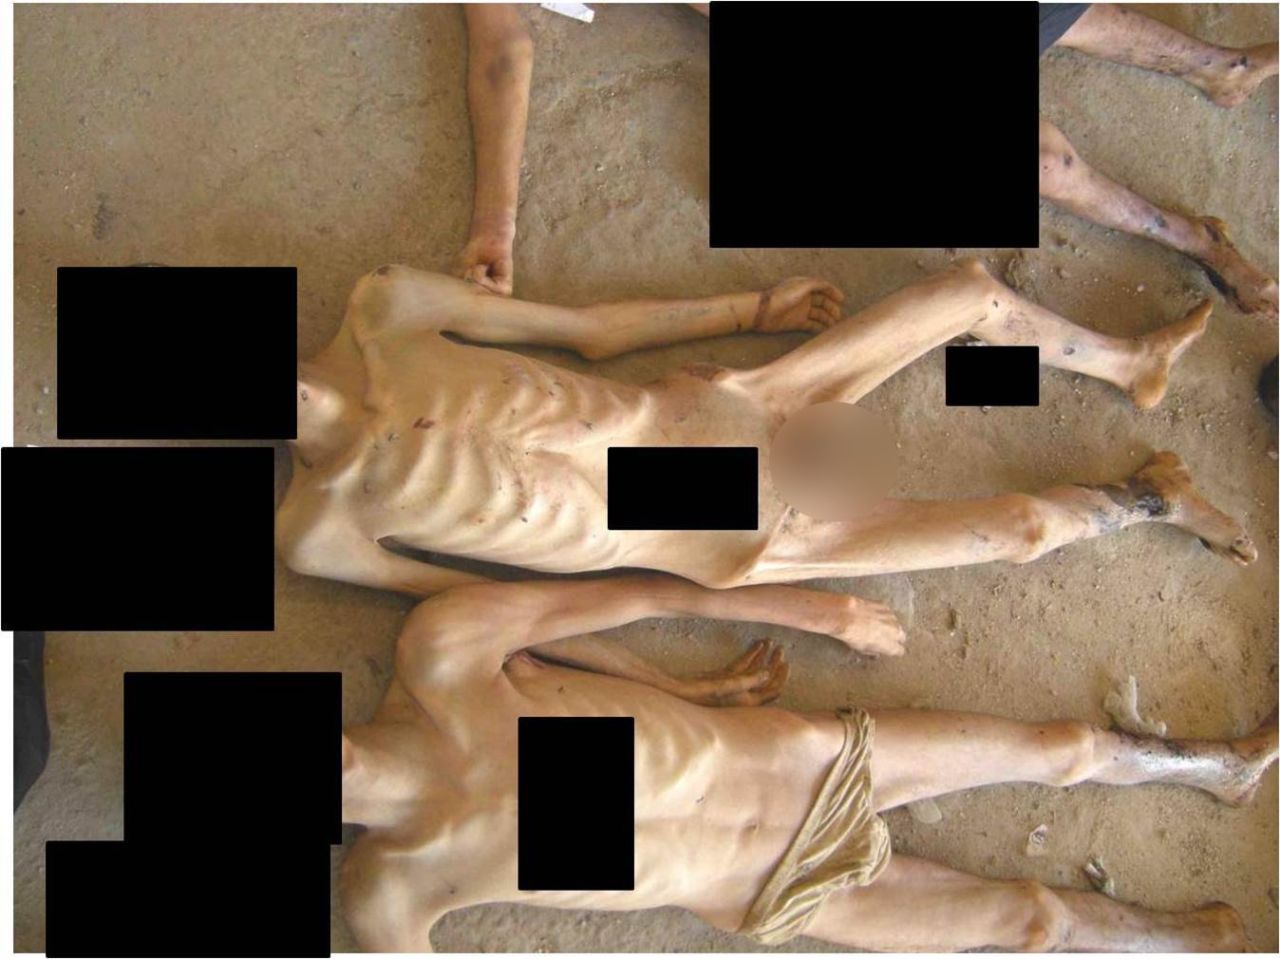 Más cuerpos demacrados supuestamente muertos bajo custodia siria.